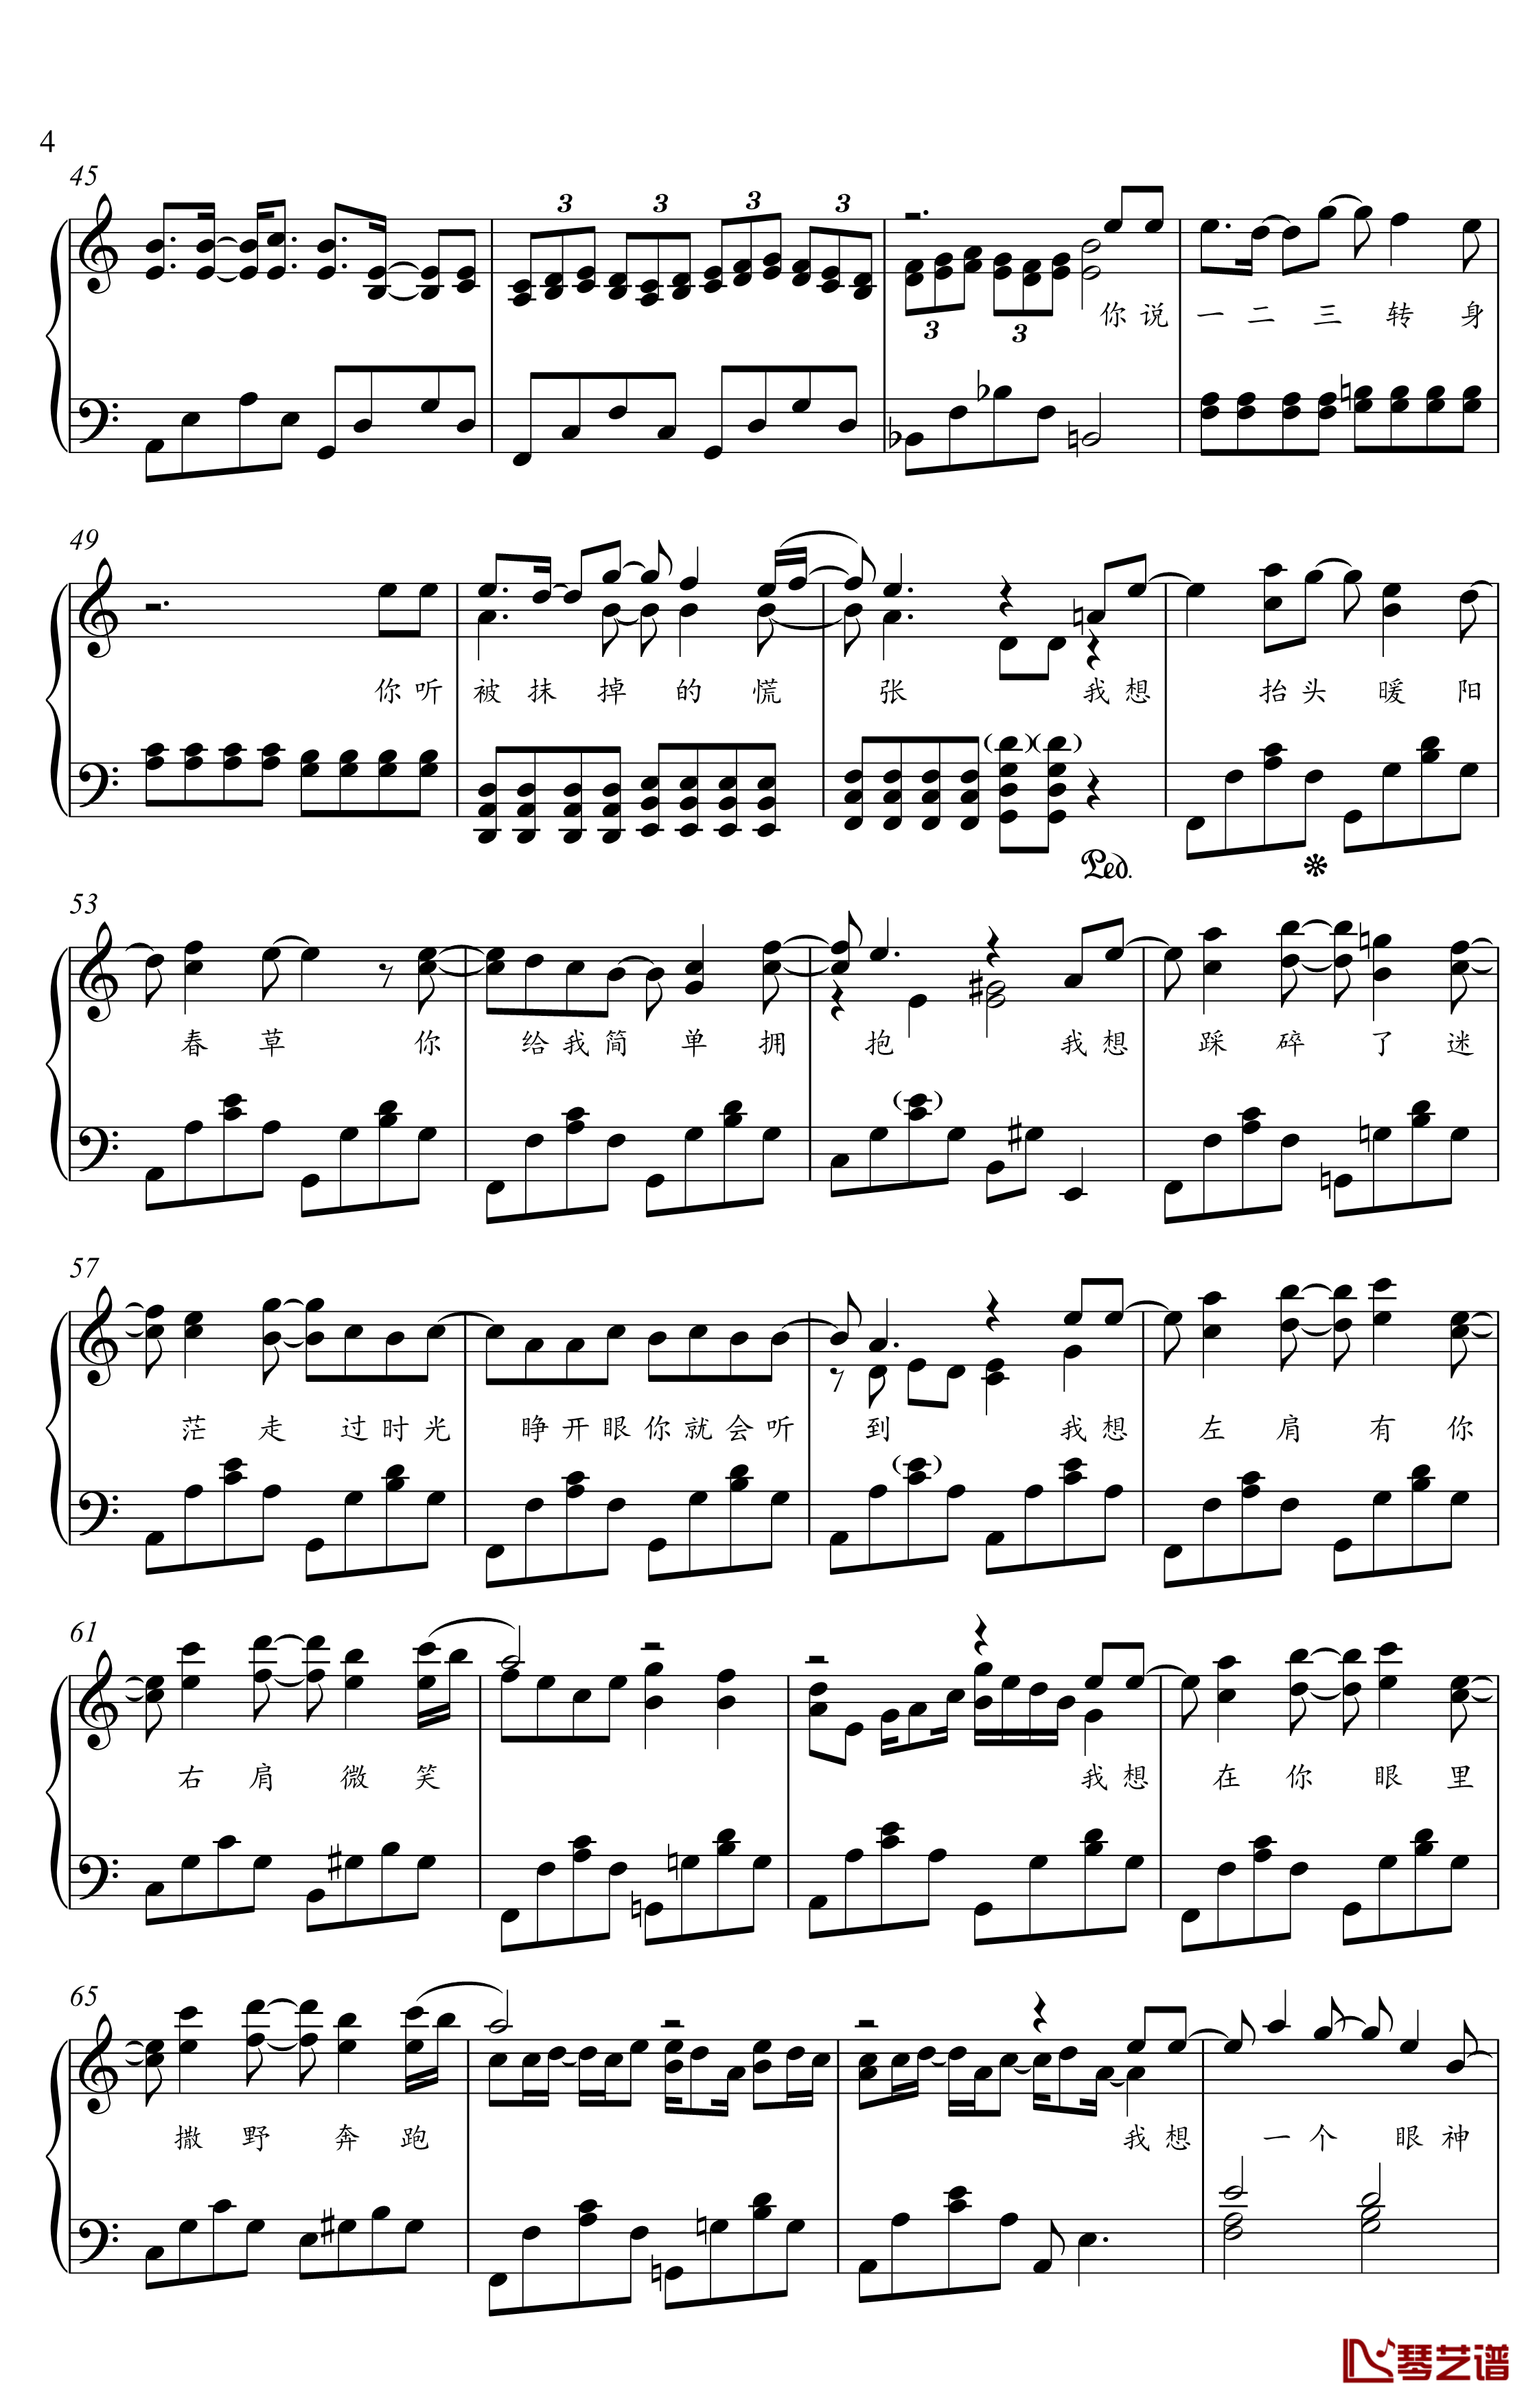 撒野钢琴谱-金老师独奏谱2002074